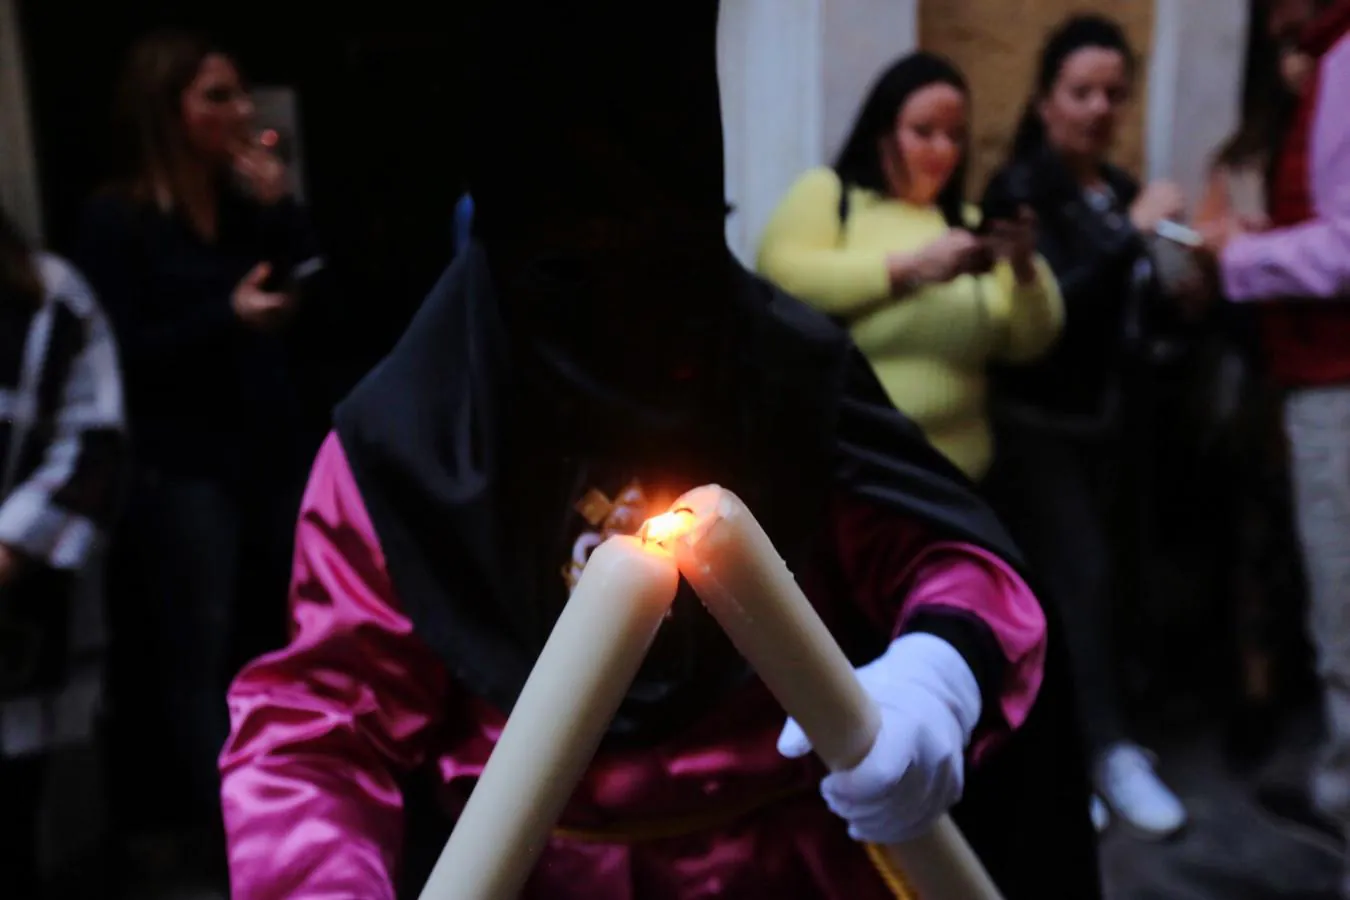 FOTOS: El Nazareno en la Semana Santa de Cádiz 2019